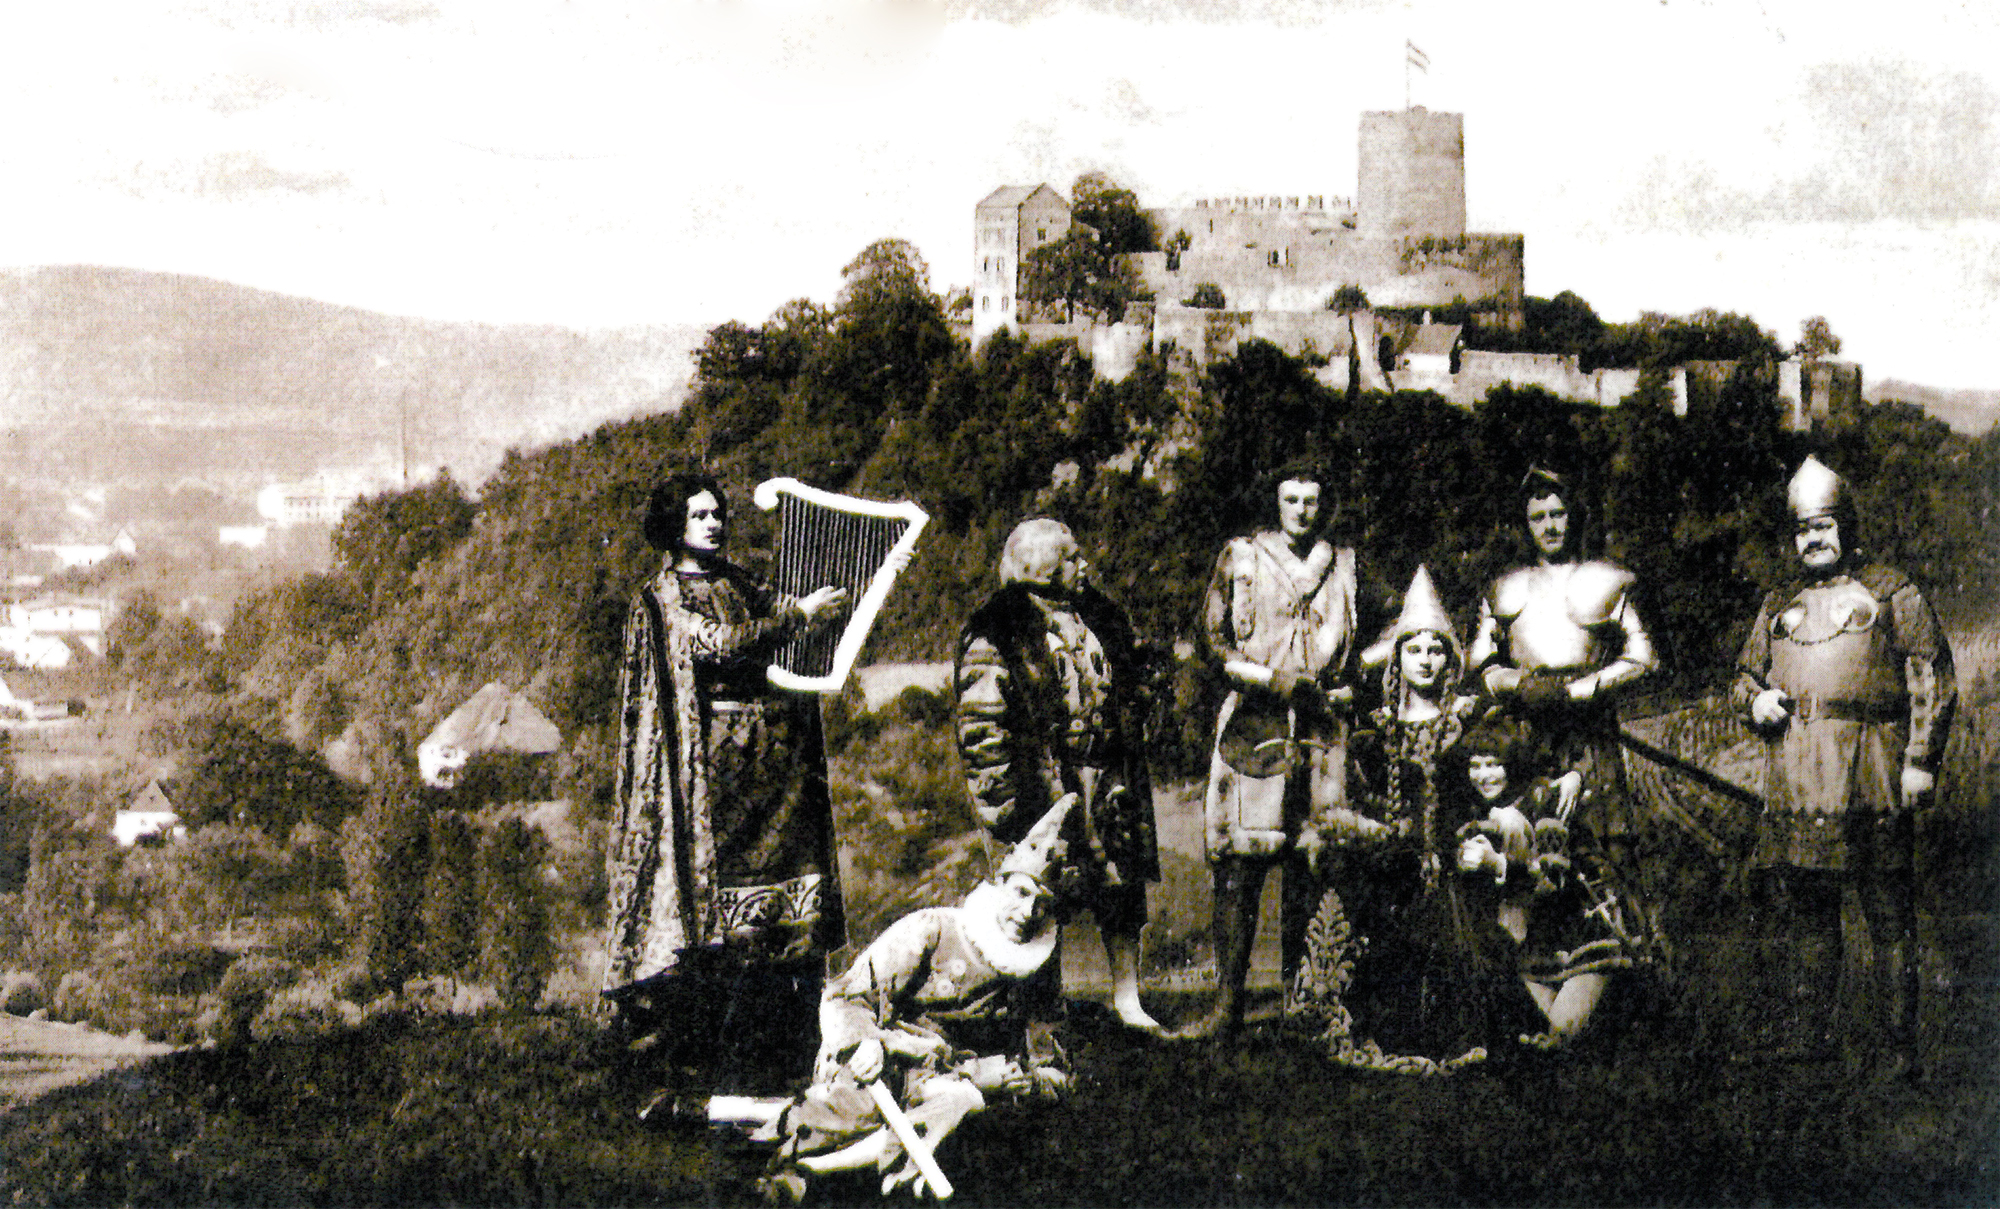 Aktorzy występujący w sztuce wystawianej na zamku Bolków - "Bolko" (zdjęcie z ok. 1920 r.)